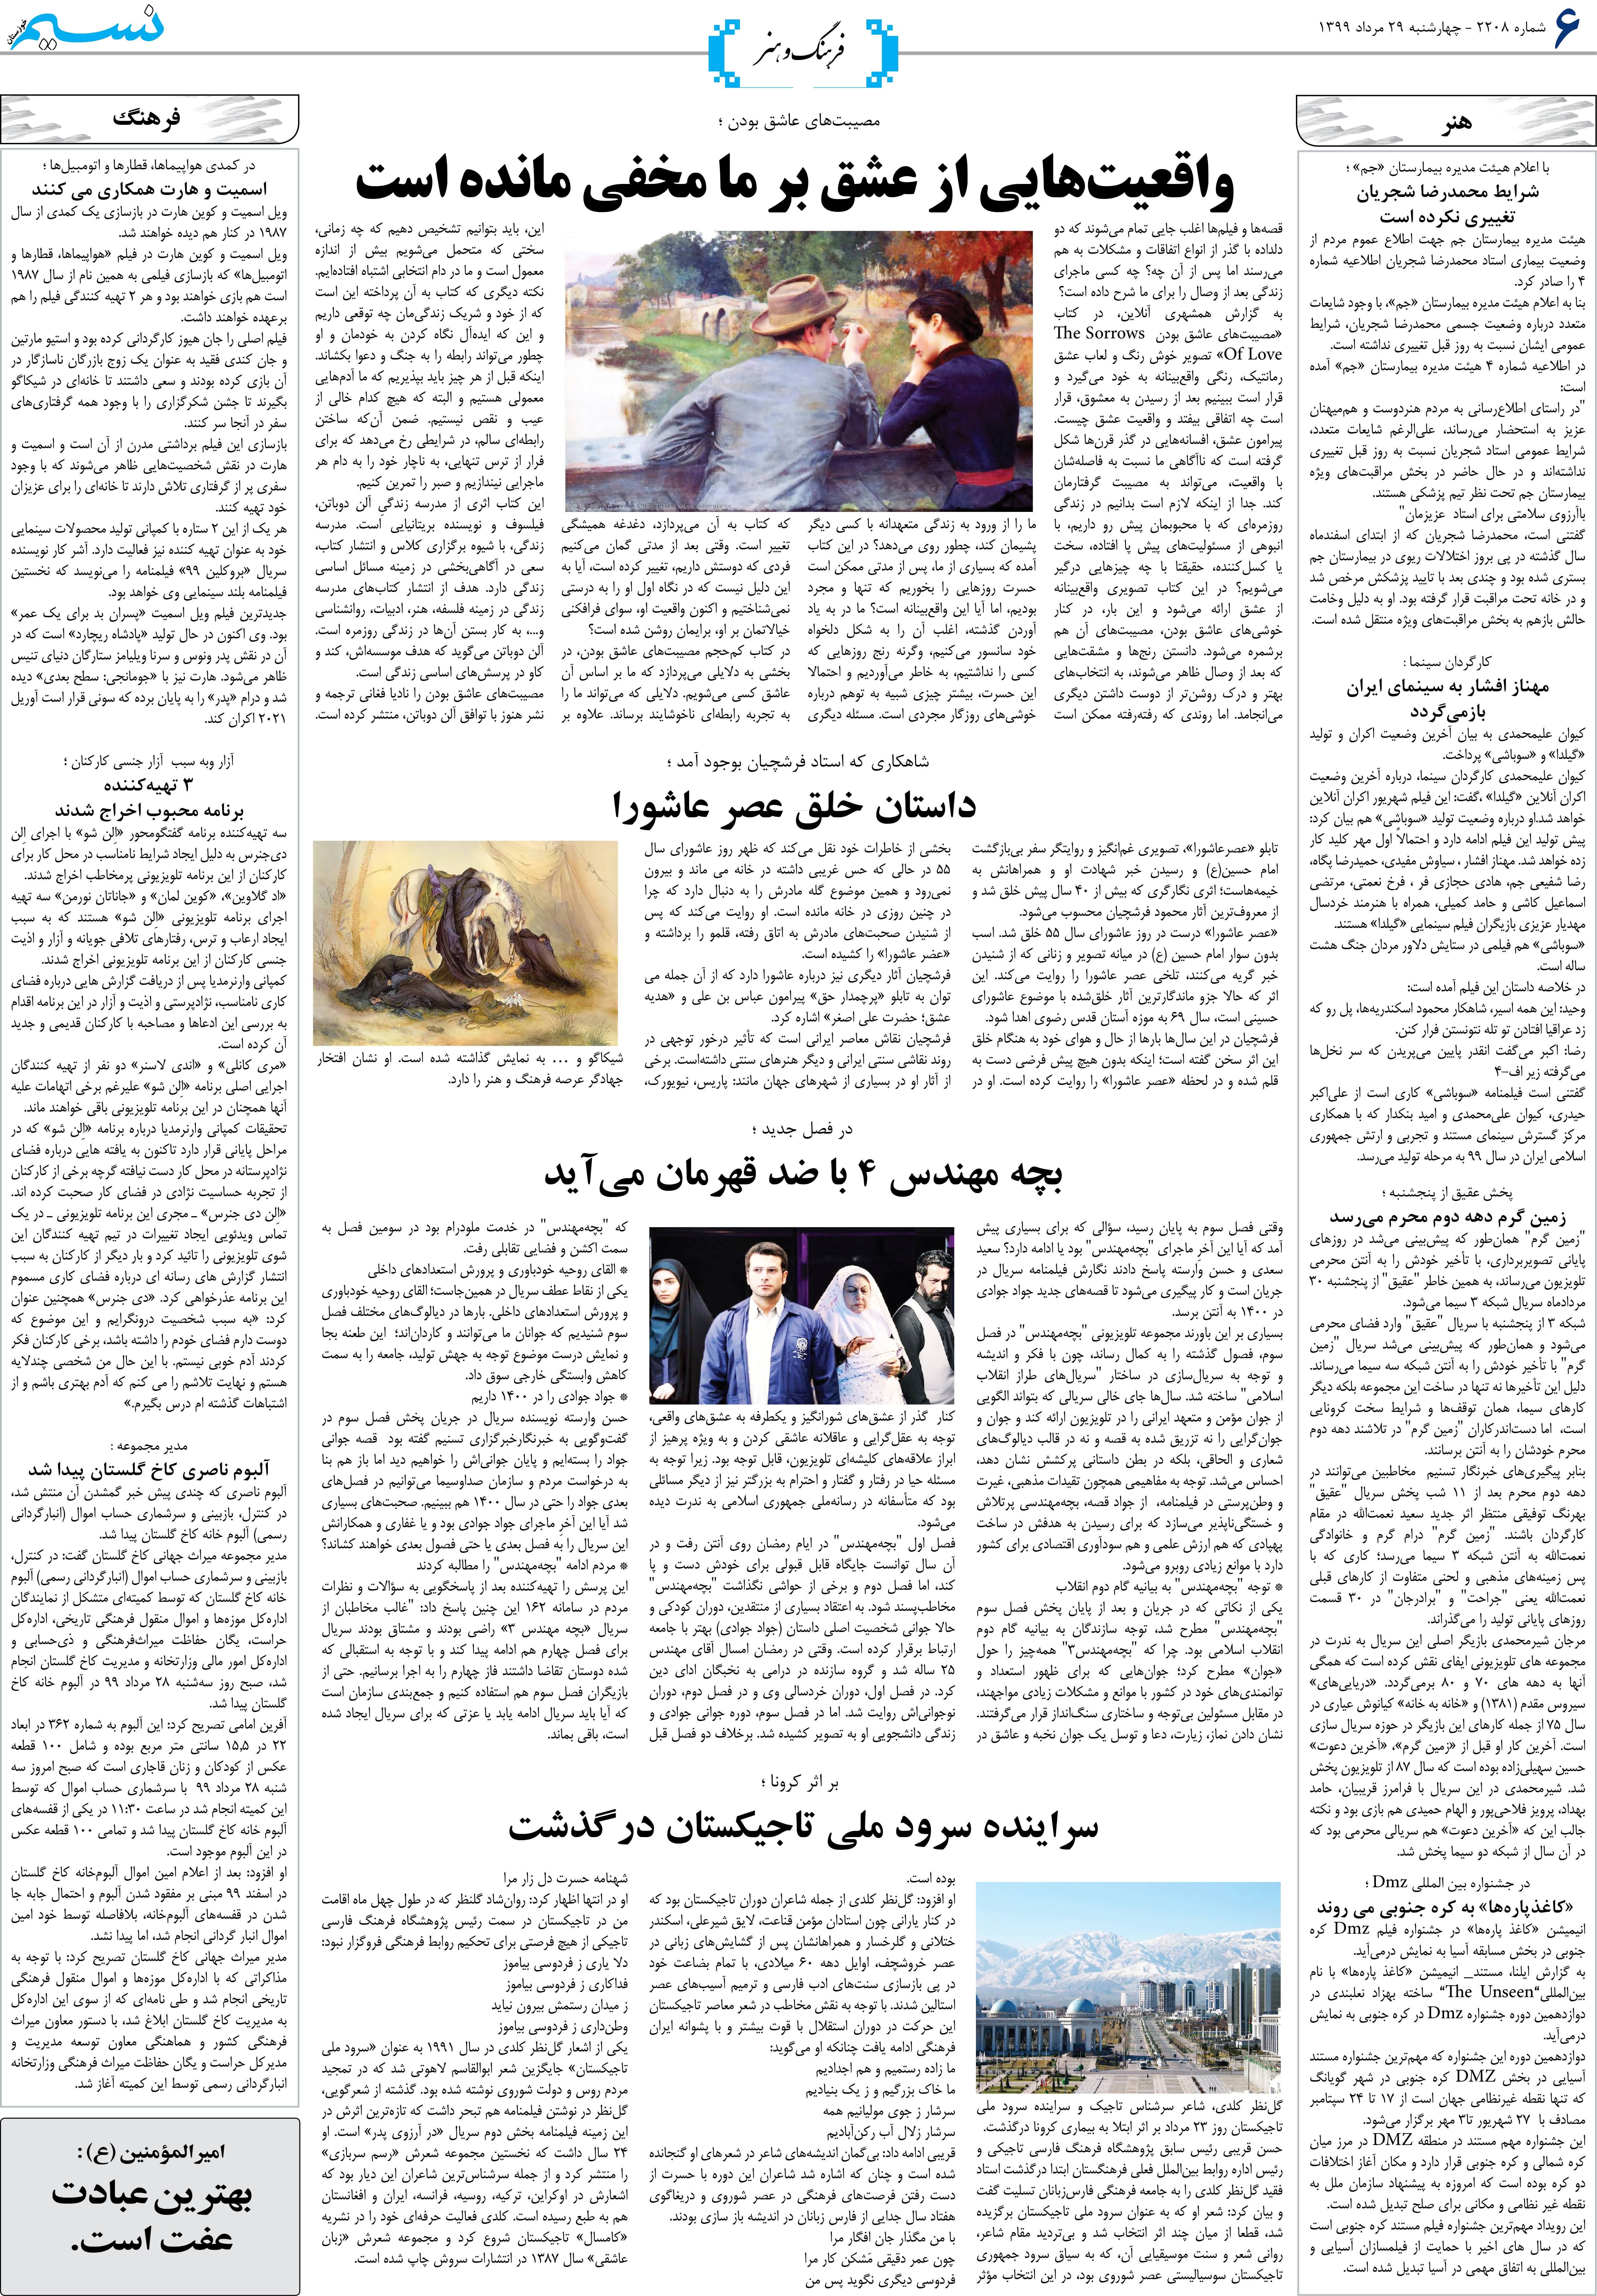 صفحه فرهنگ و هنر روزنامه نسیم شماره 2208